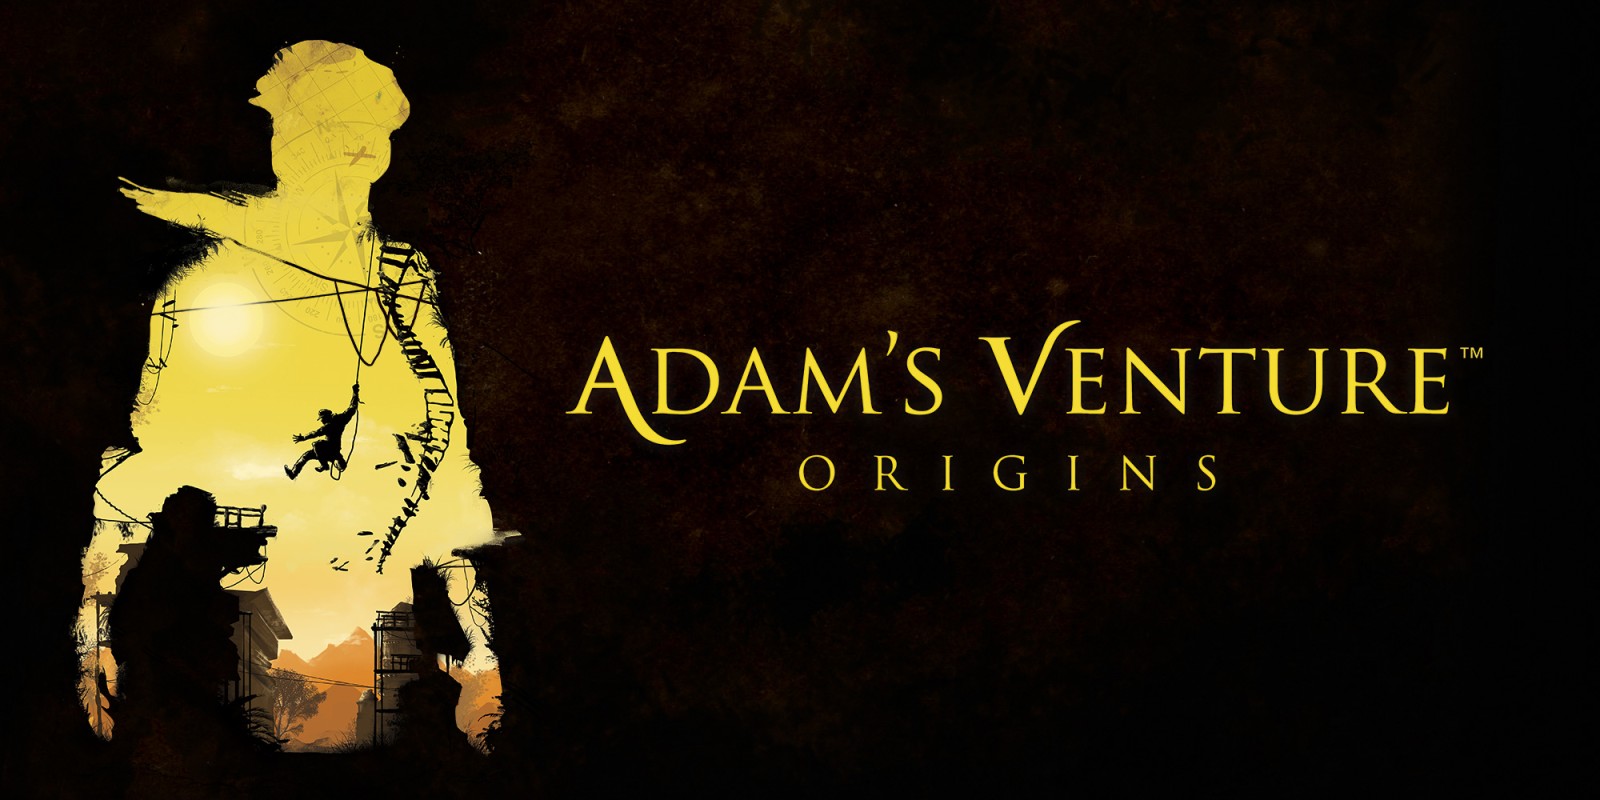 Adam's Venture®: Origins